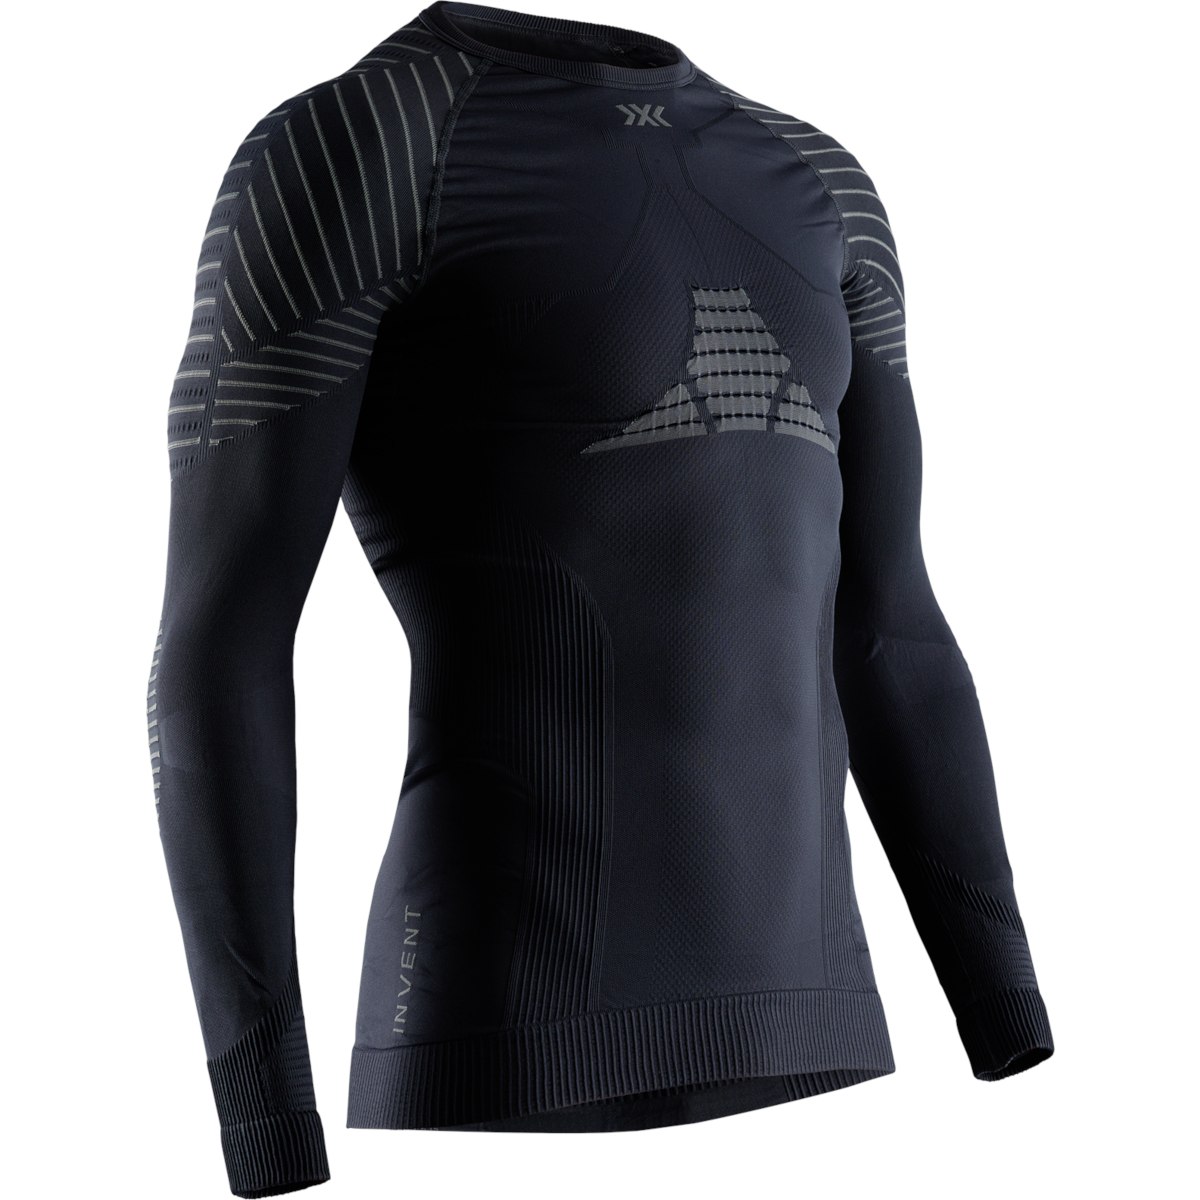 Produktbild von X-Bionic Invent 4.0 Shirt Round Neck Langarm-Unterhemd für Herren - black/charcoal